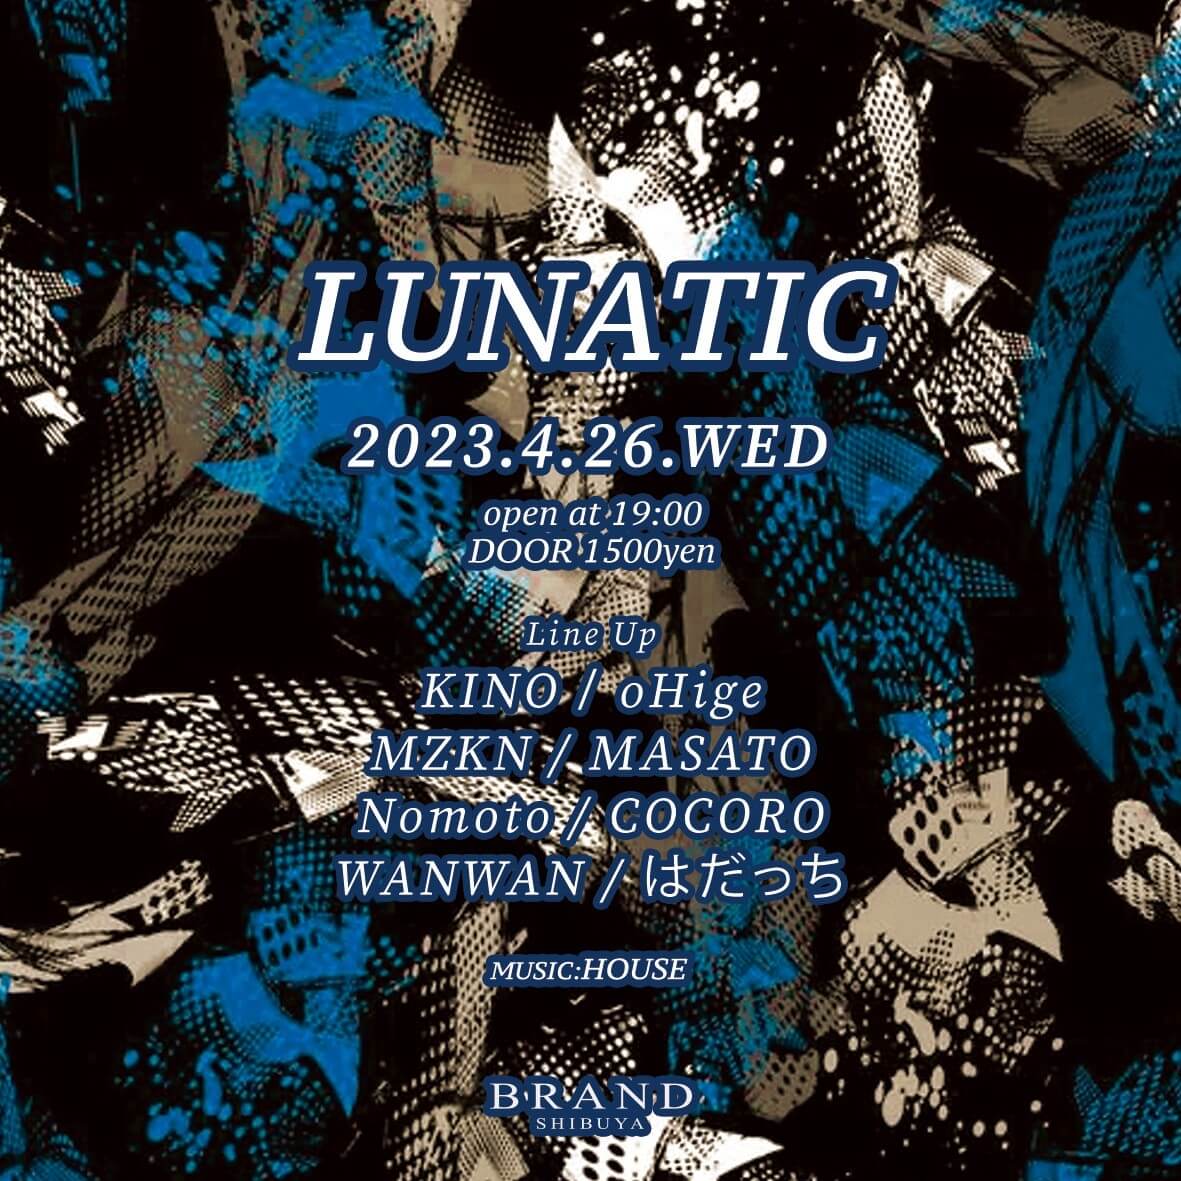 LUNATIC 2023年04月26日（水曜日）に渋谷 クラブのBRAND SHIBUYAで開催されるHOUSEイベント